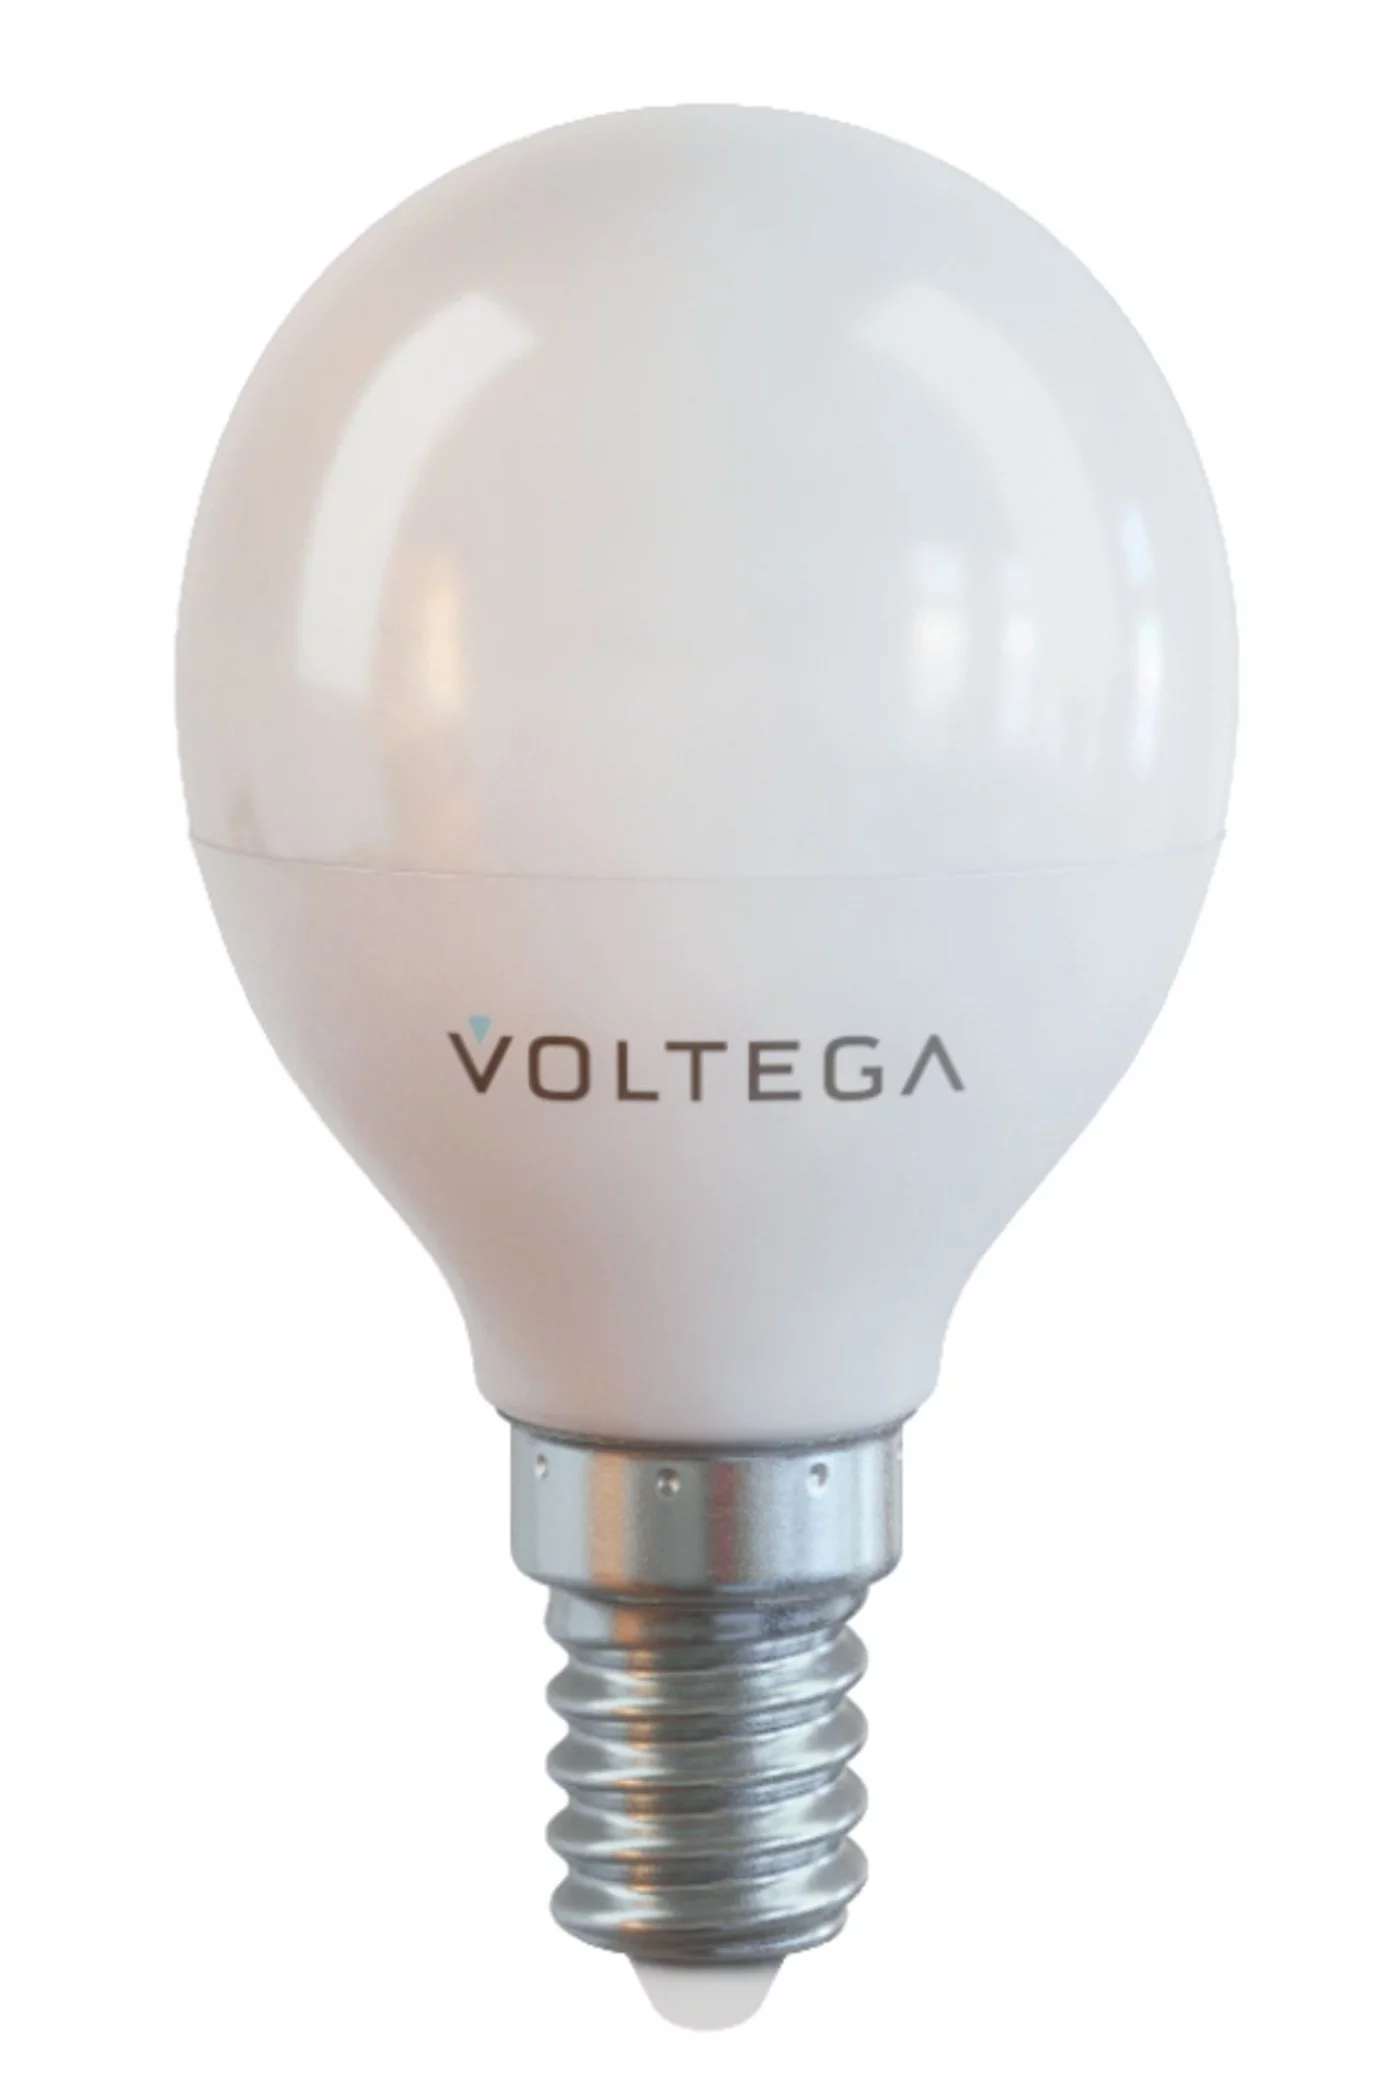   
                        
                        Лампа VOLTEGA  17050    
                        .  
                                                                                                Материал: Пластик.                          фото 1